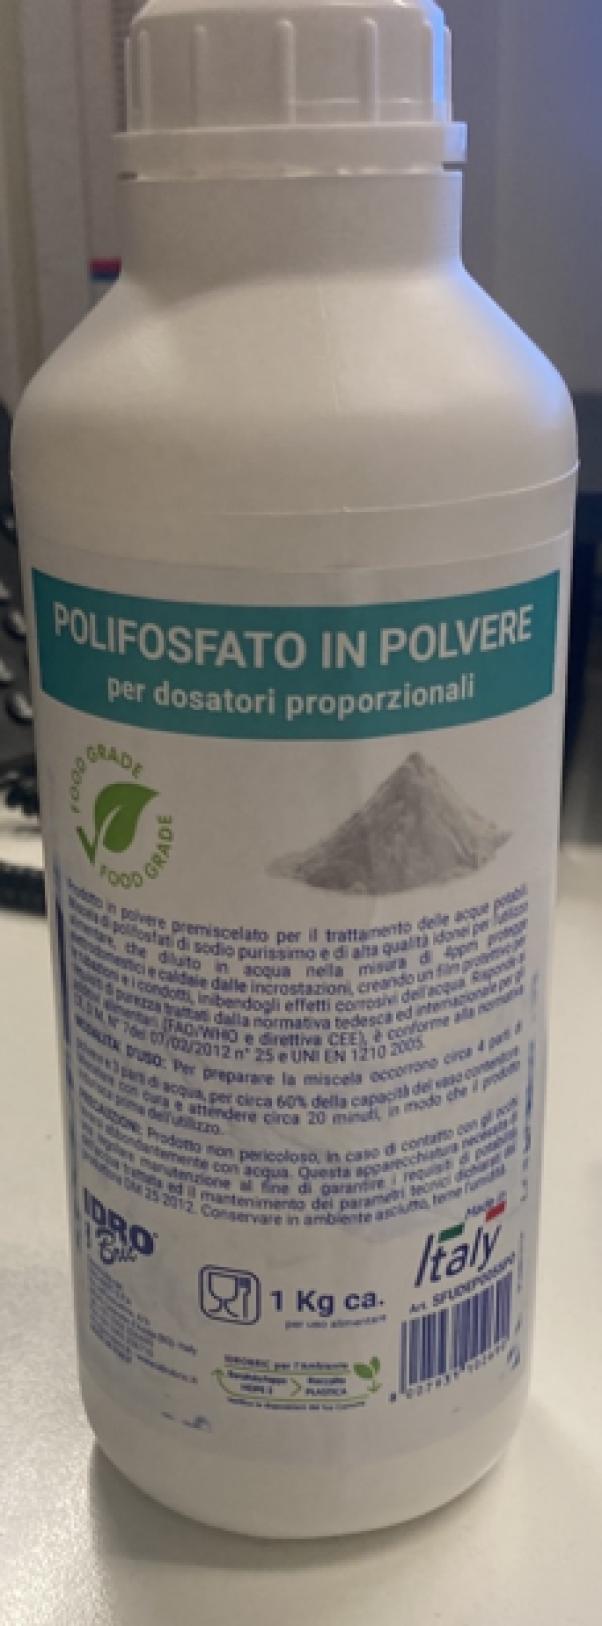 Barattolo Polifosfato in polvere Idro Bric per dosatori proporzionali 1 kg - SFUDEP0055PO 01